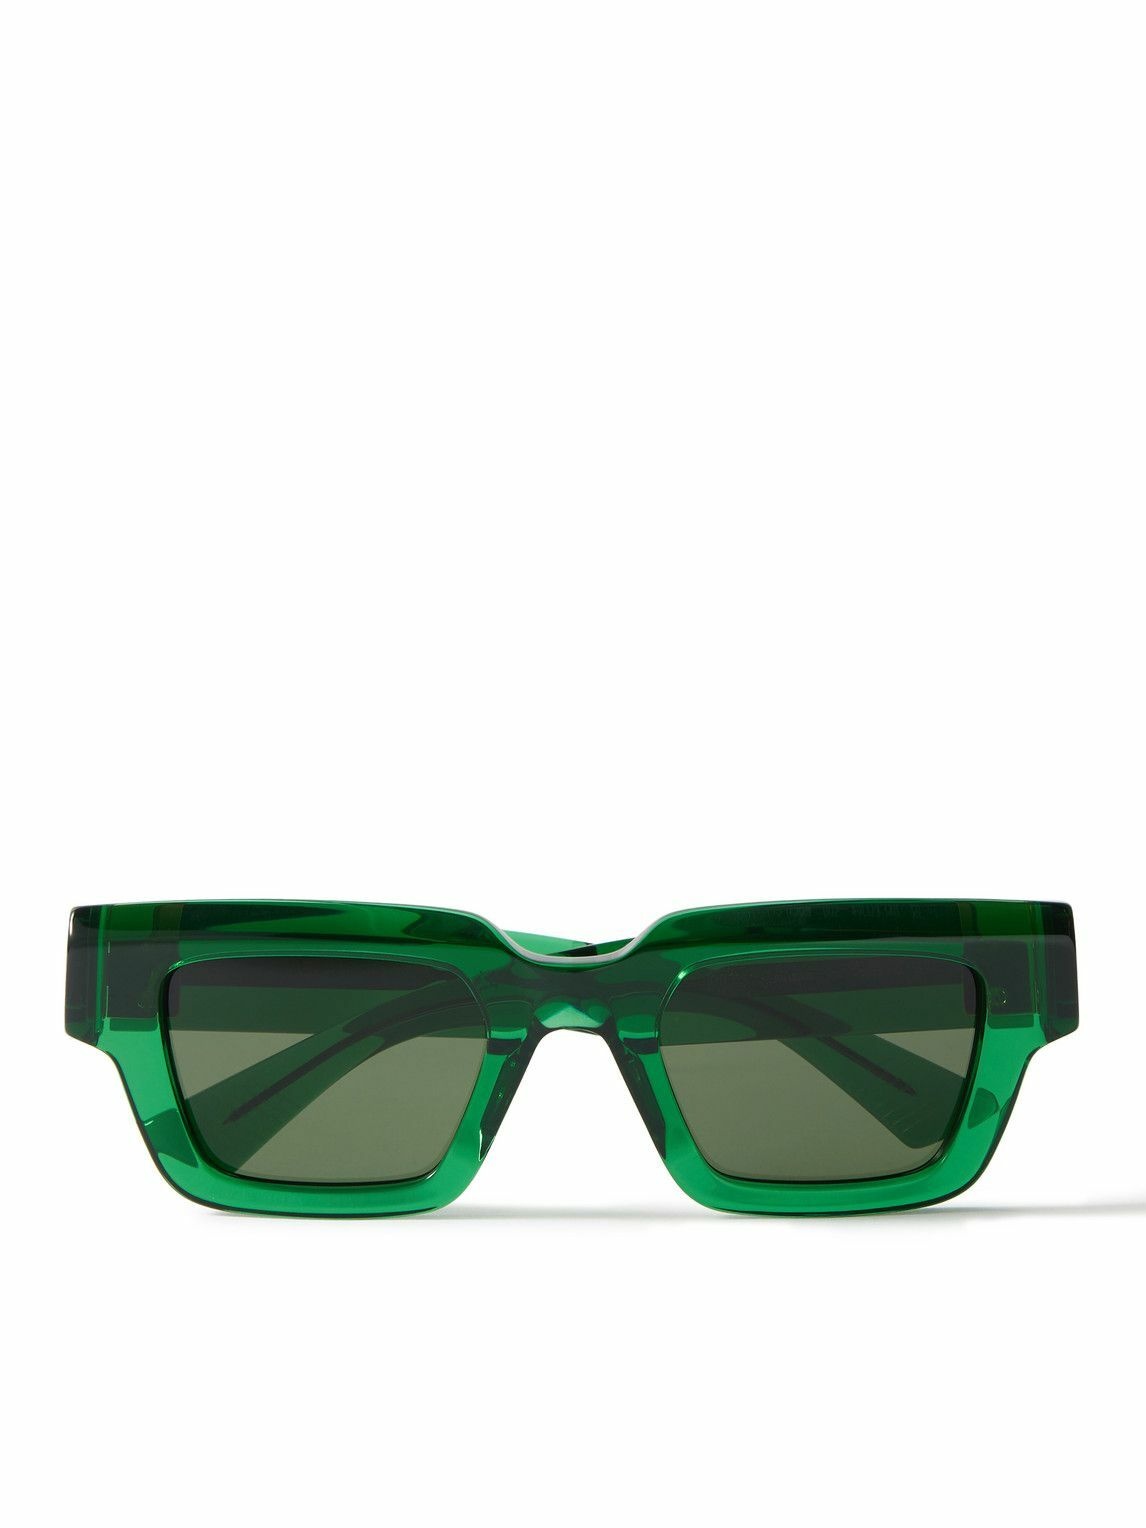 Bottega Veneta - Rectangular-Frame Acetate Sunglasses Bottega Veneta